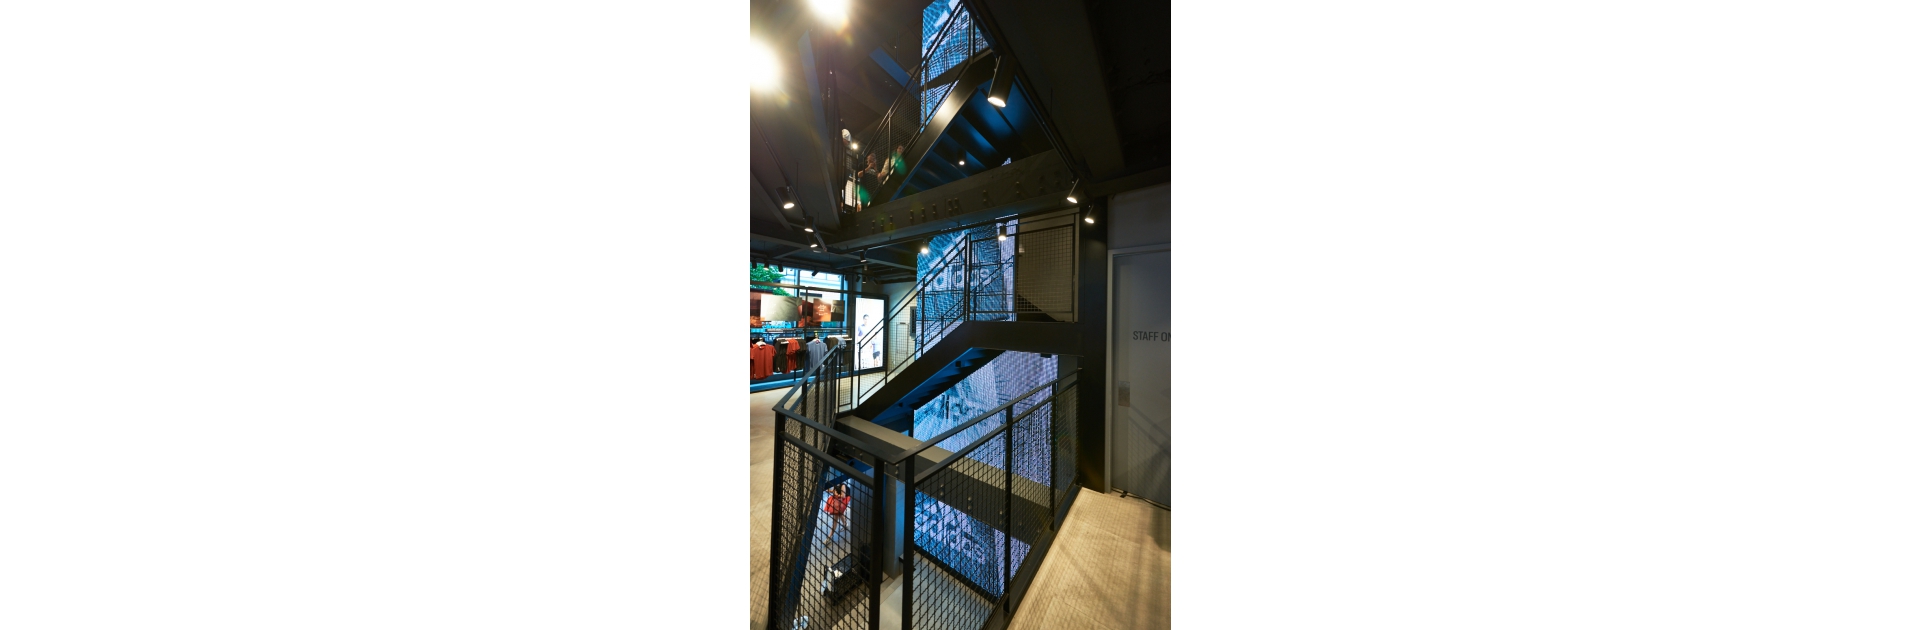 adidas西門漢中門市0609全新開幕 巨幅adidas LED螢幕貫穿四層樓